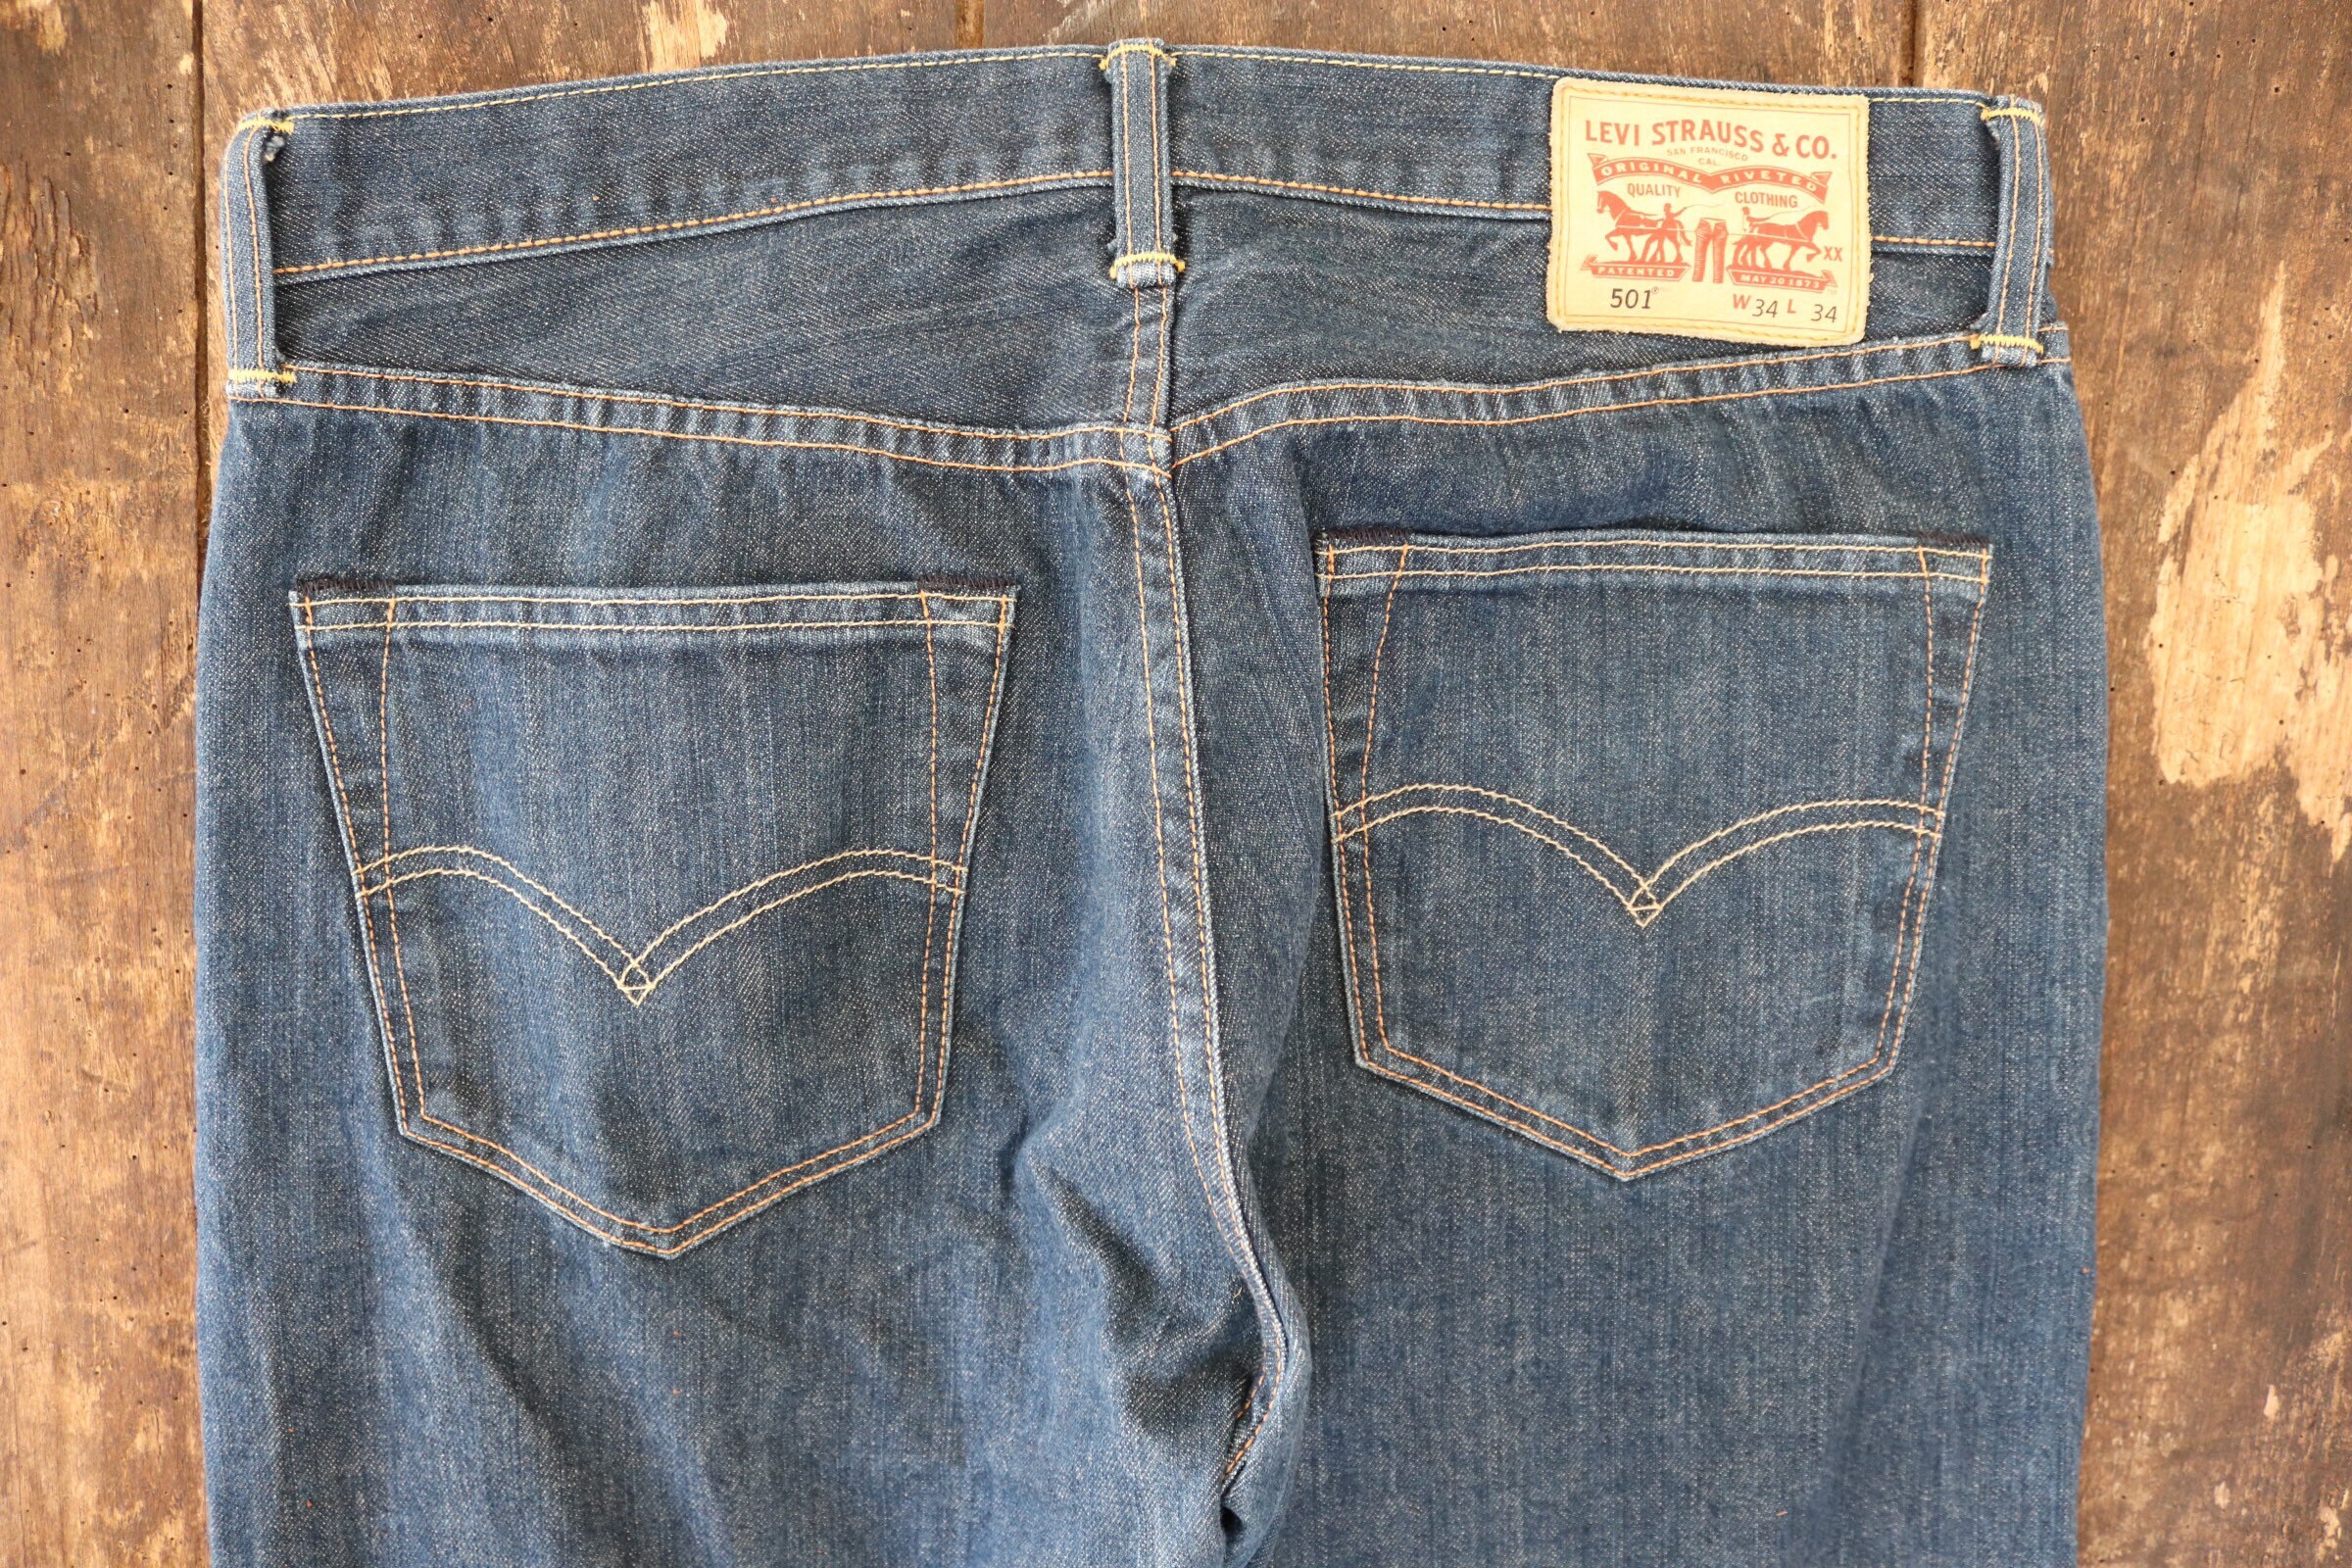 Vintage Levis Strauss indigo blue denim 501 jeans 33 x 34 workwear ...